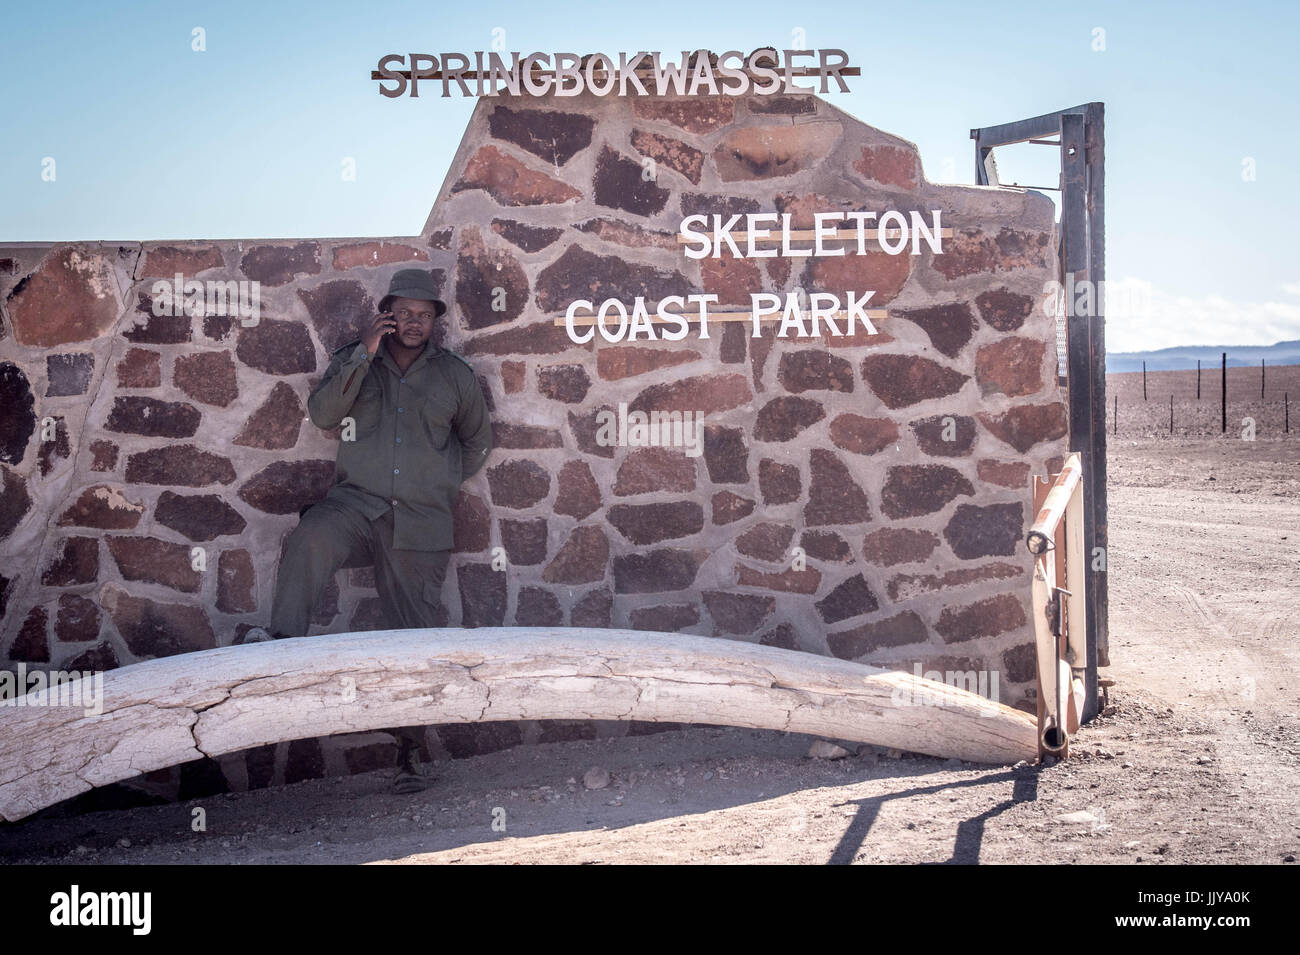 Wache steht am Eingang des Springbokwasser, Skeleton Coast Park. Stockfoto